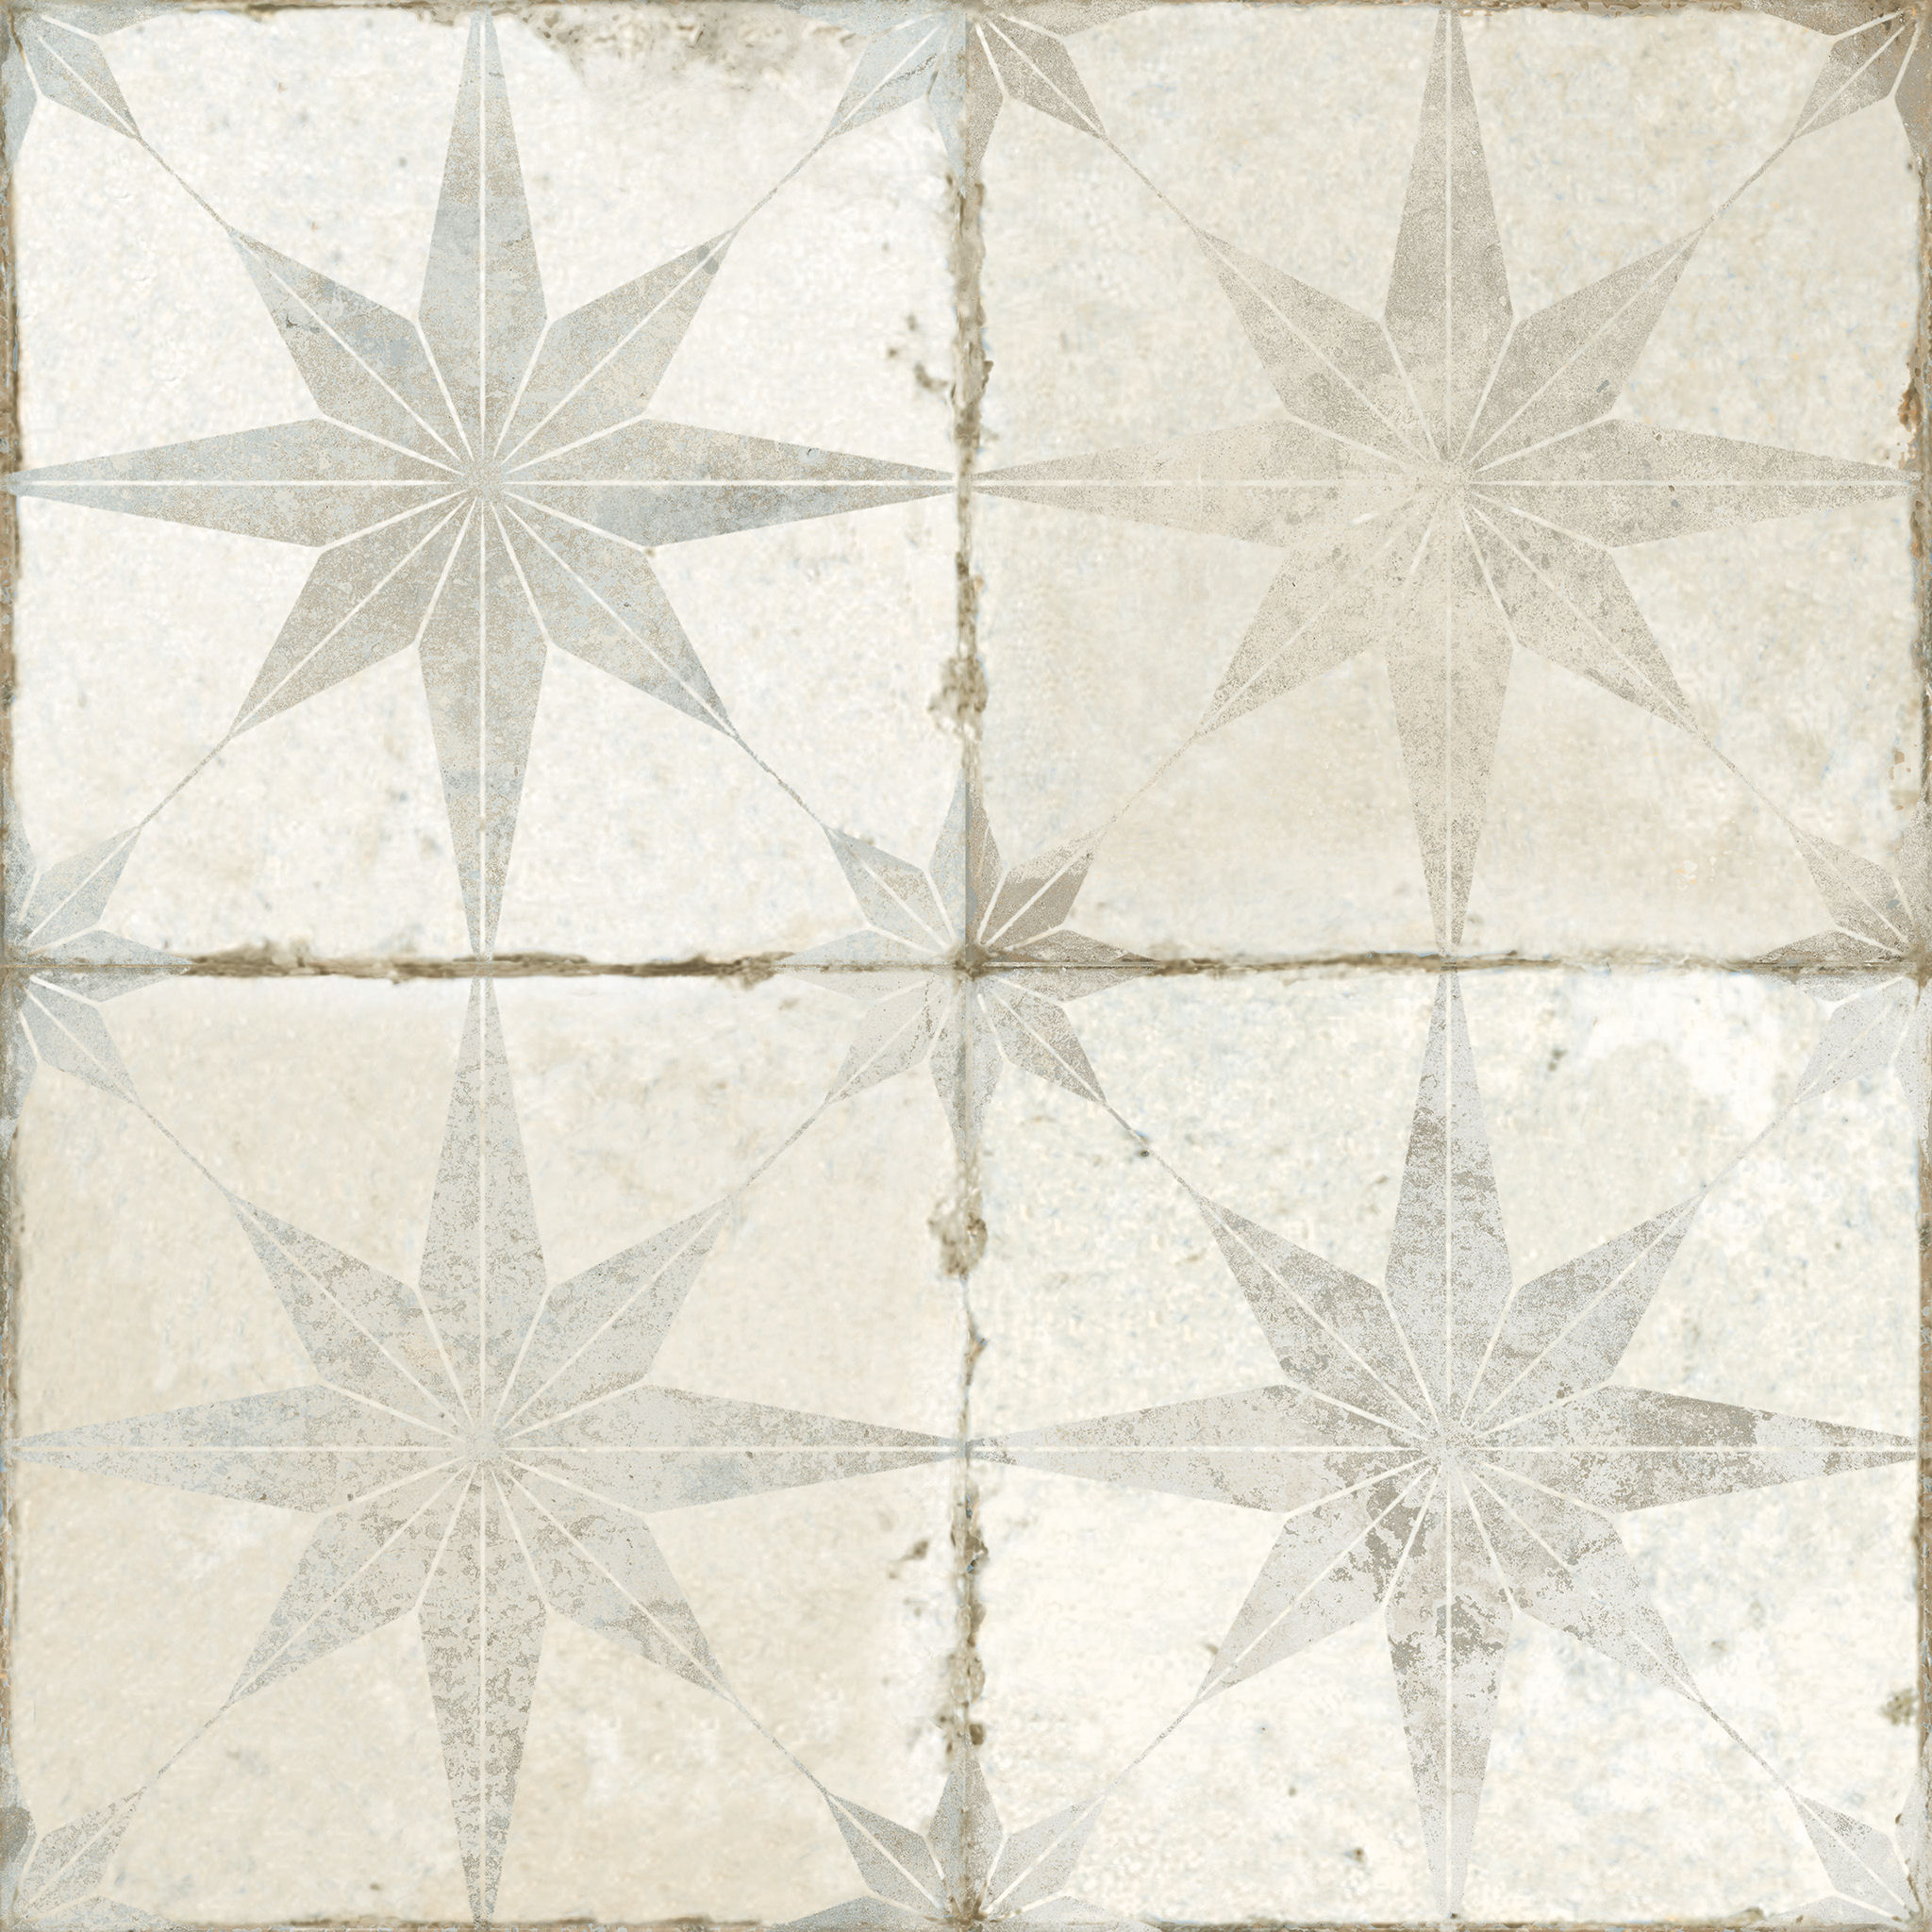 Motif White Star Ceramic Mandarin Stone, Star Tile Floor